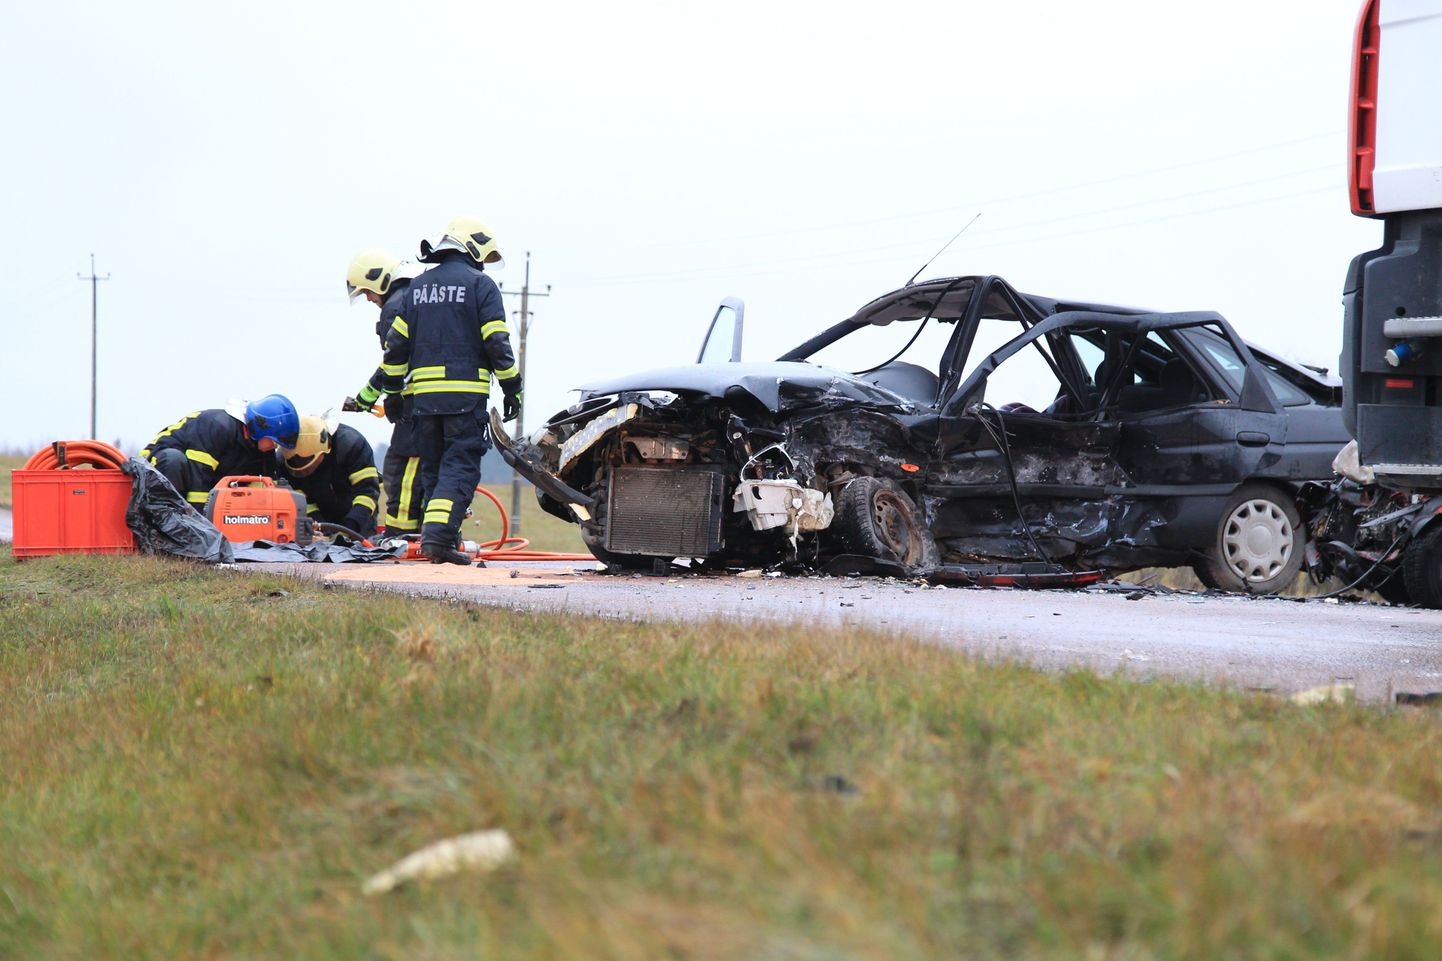 Tartu lähistel Ülenurme vallas juhtus mullu 14. novembril raske liiklusõnnetus, kus kahe auto kokkupõrkes hukkus mees, kaks inimest said vigastada.